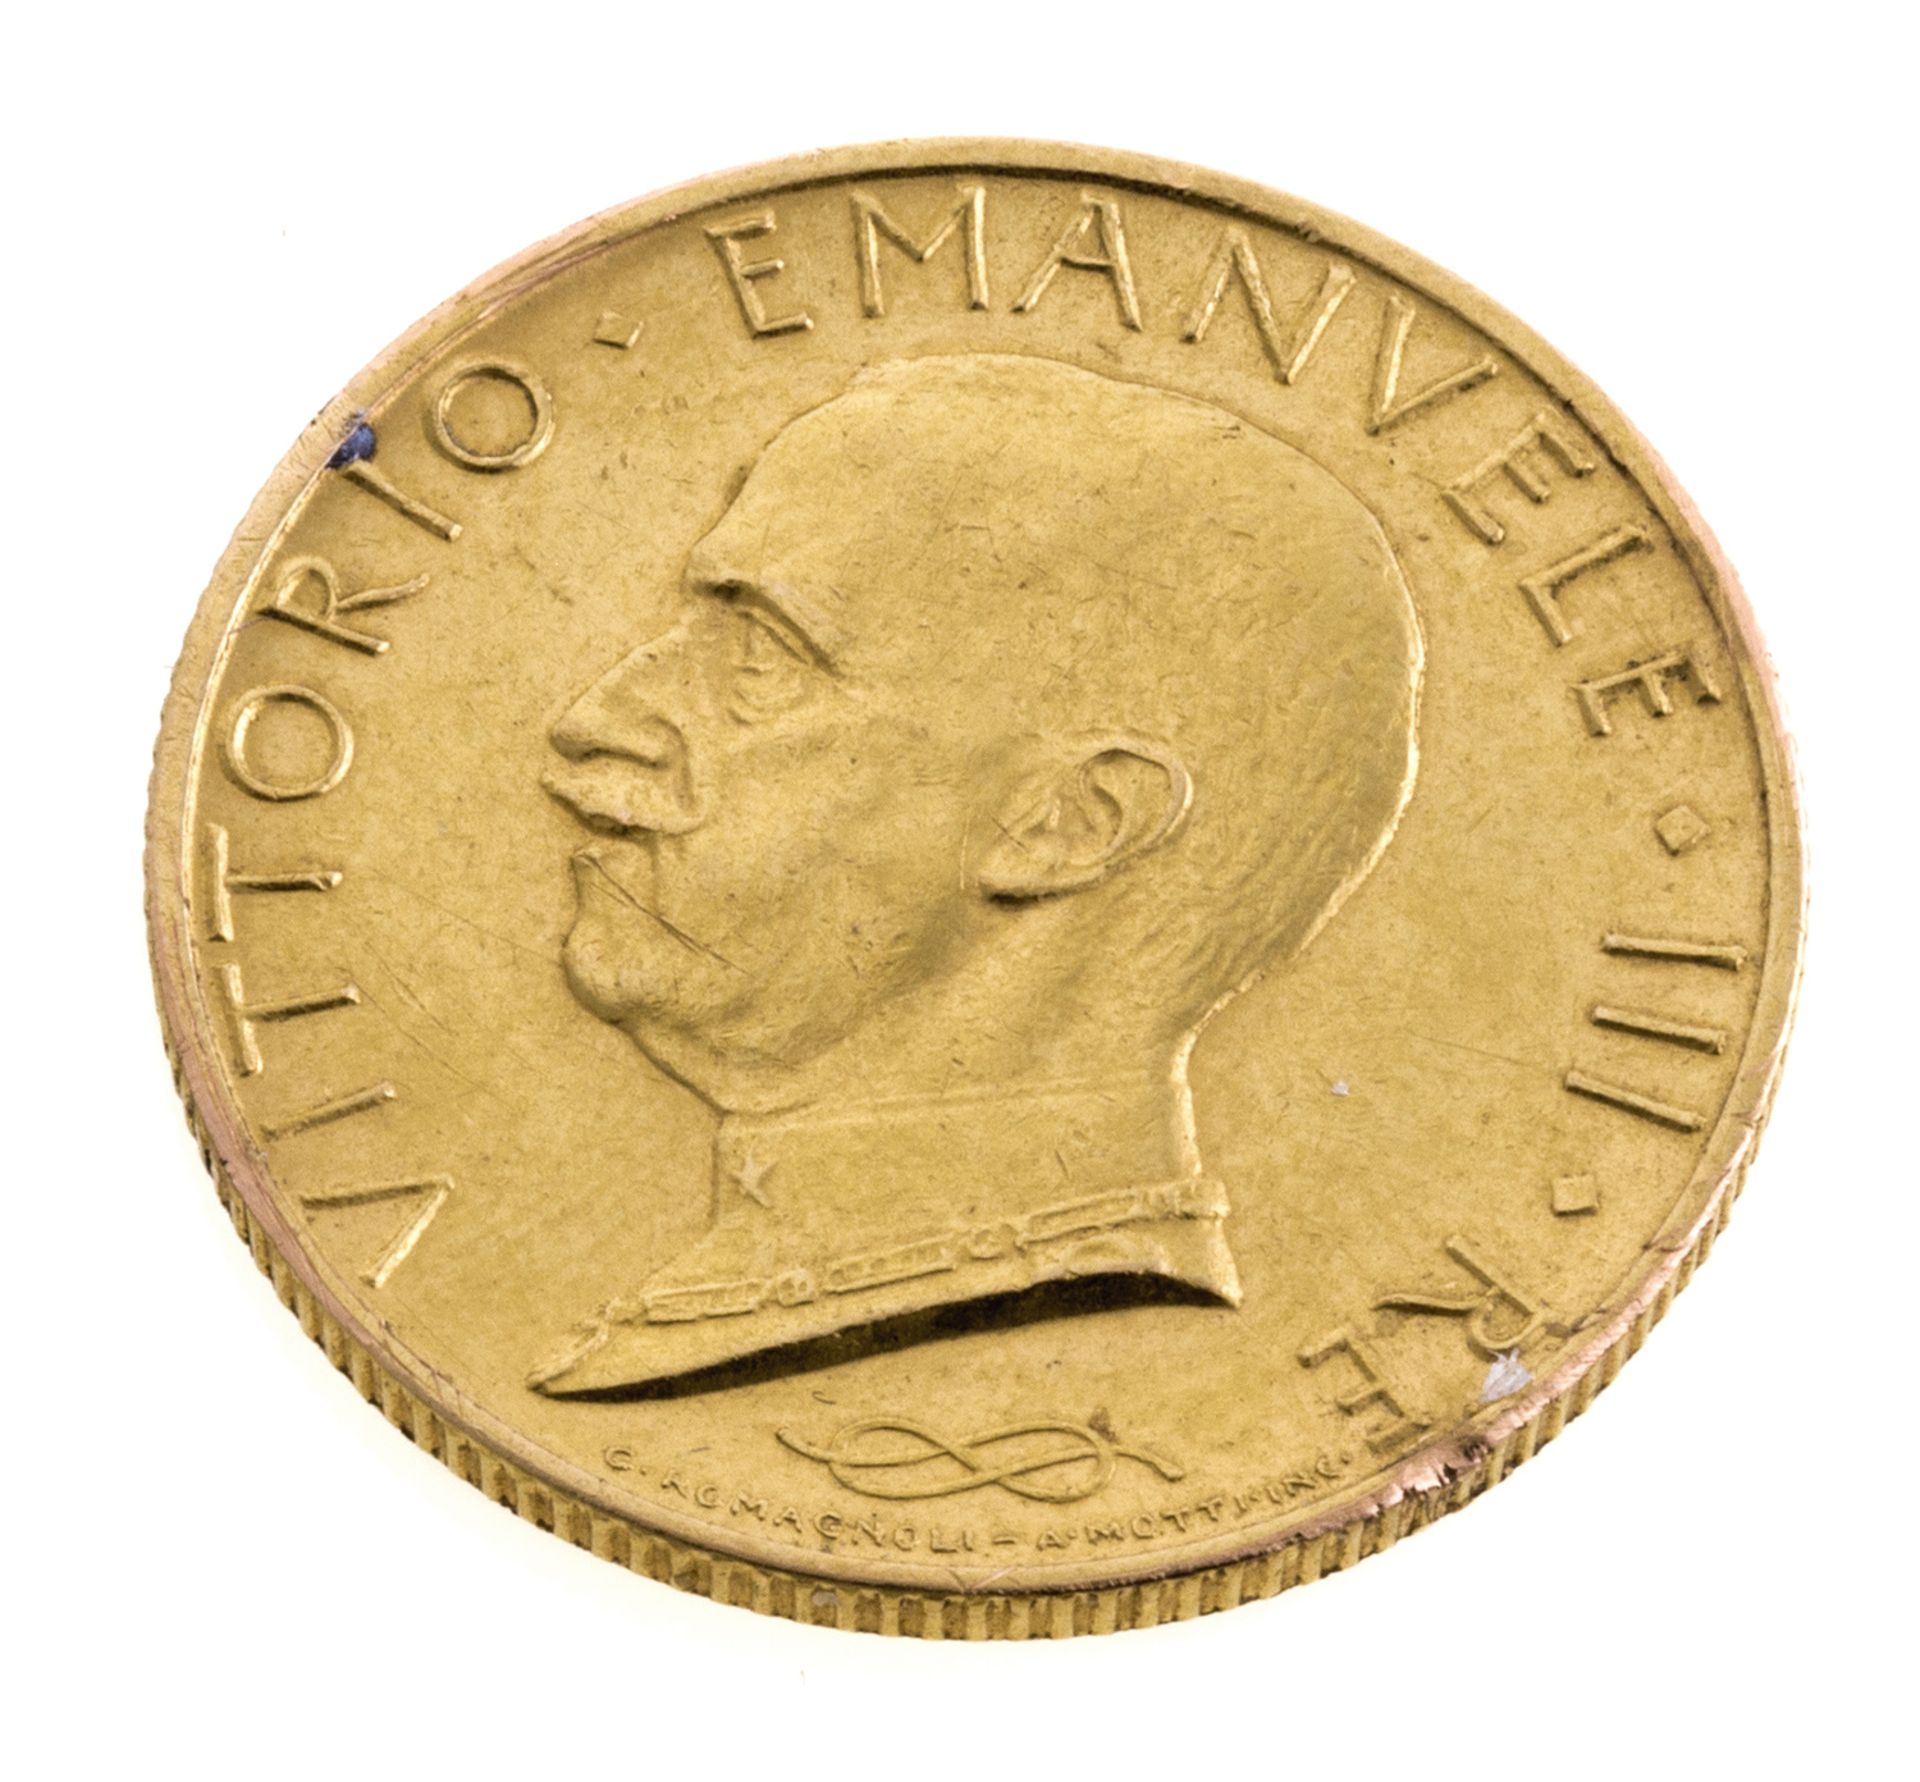 COIN OF VITTORIO EMANUELE III - L100 1931 IX R (1900-1946)